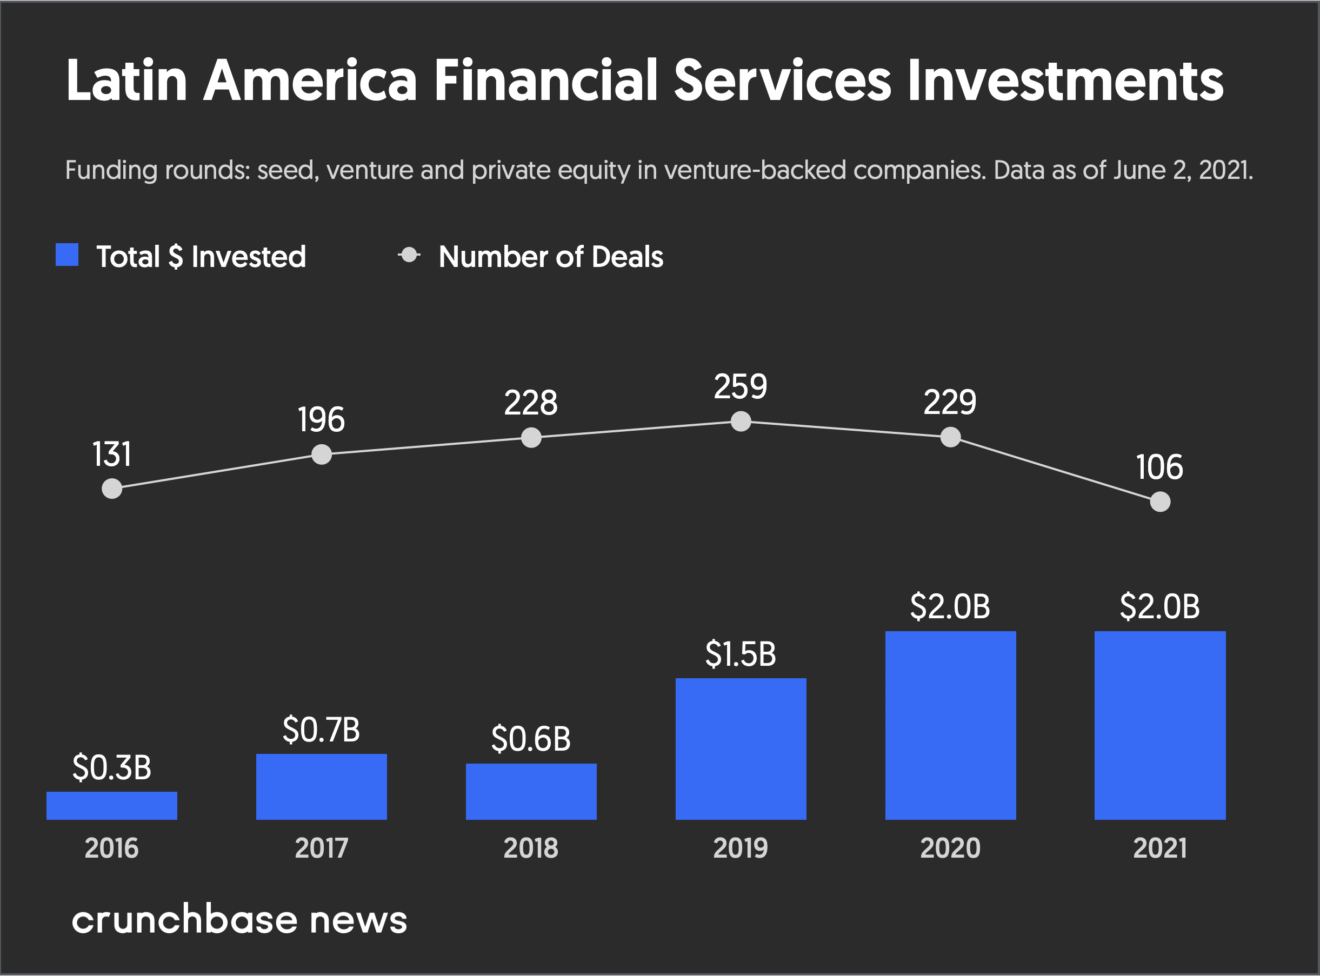 Inversiones en servicios financieros en América Latina, Crunchbase News, junio de 2021